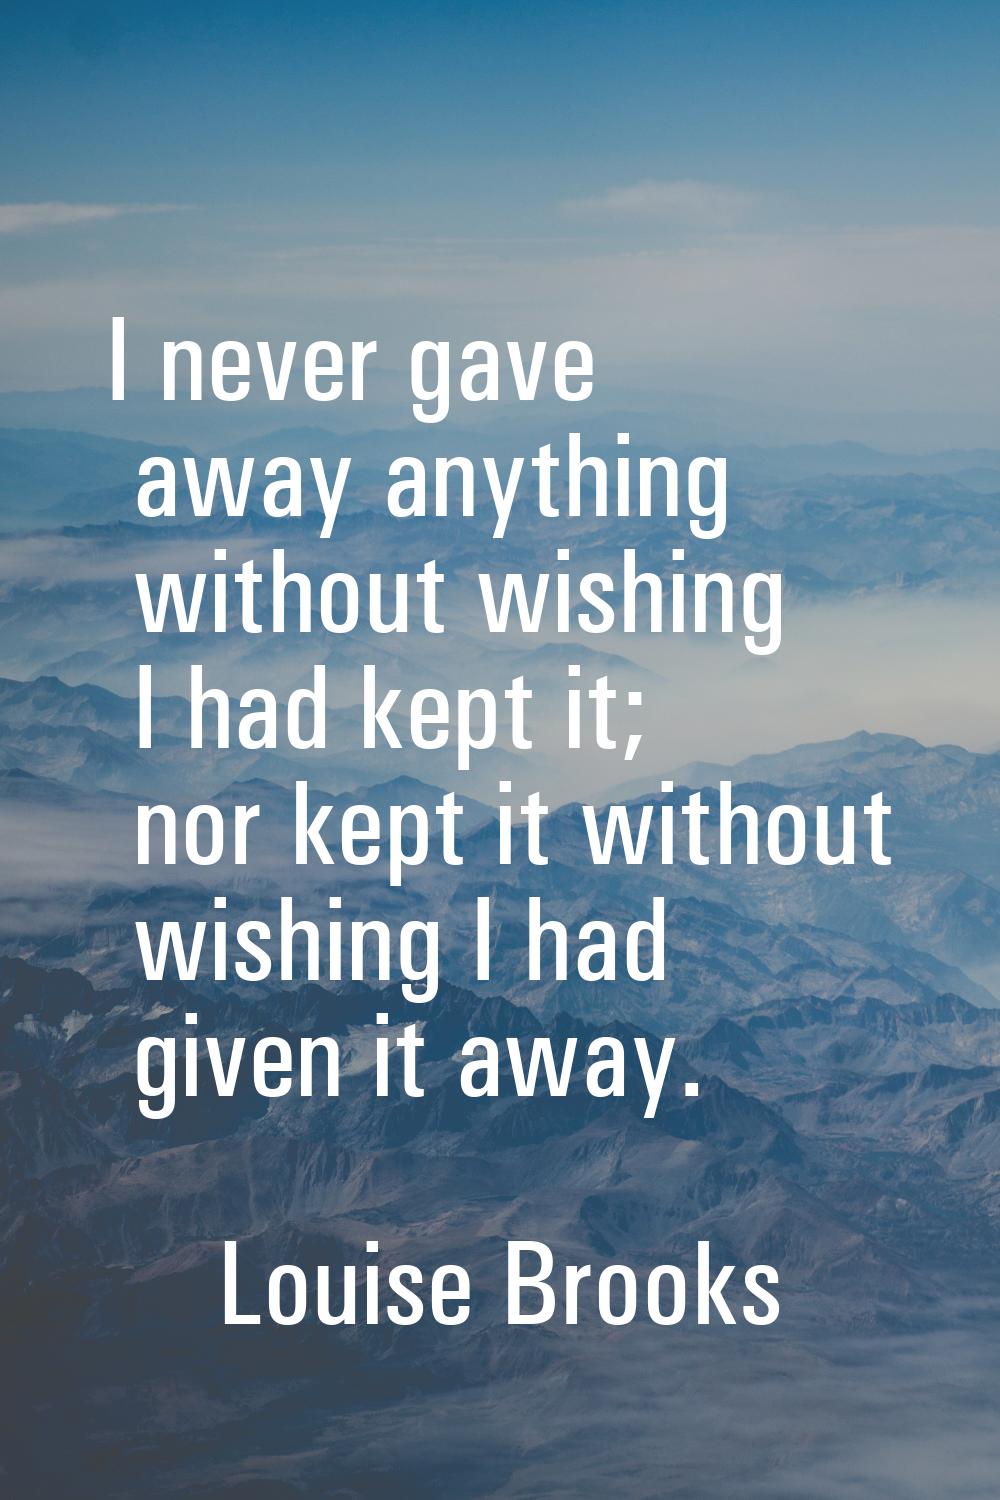 I never gave away anything without wishing I had kept it; nor kept it without wishing I had given i